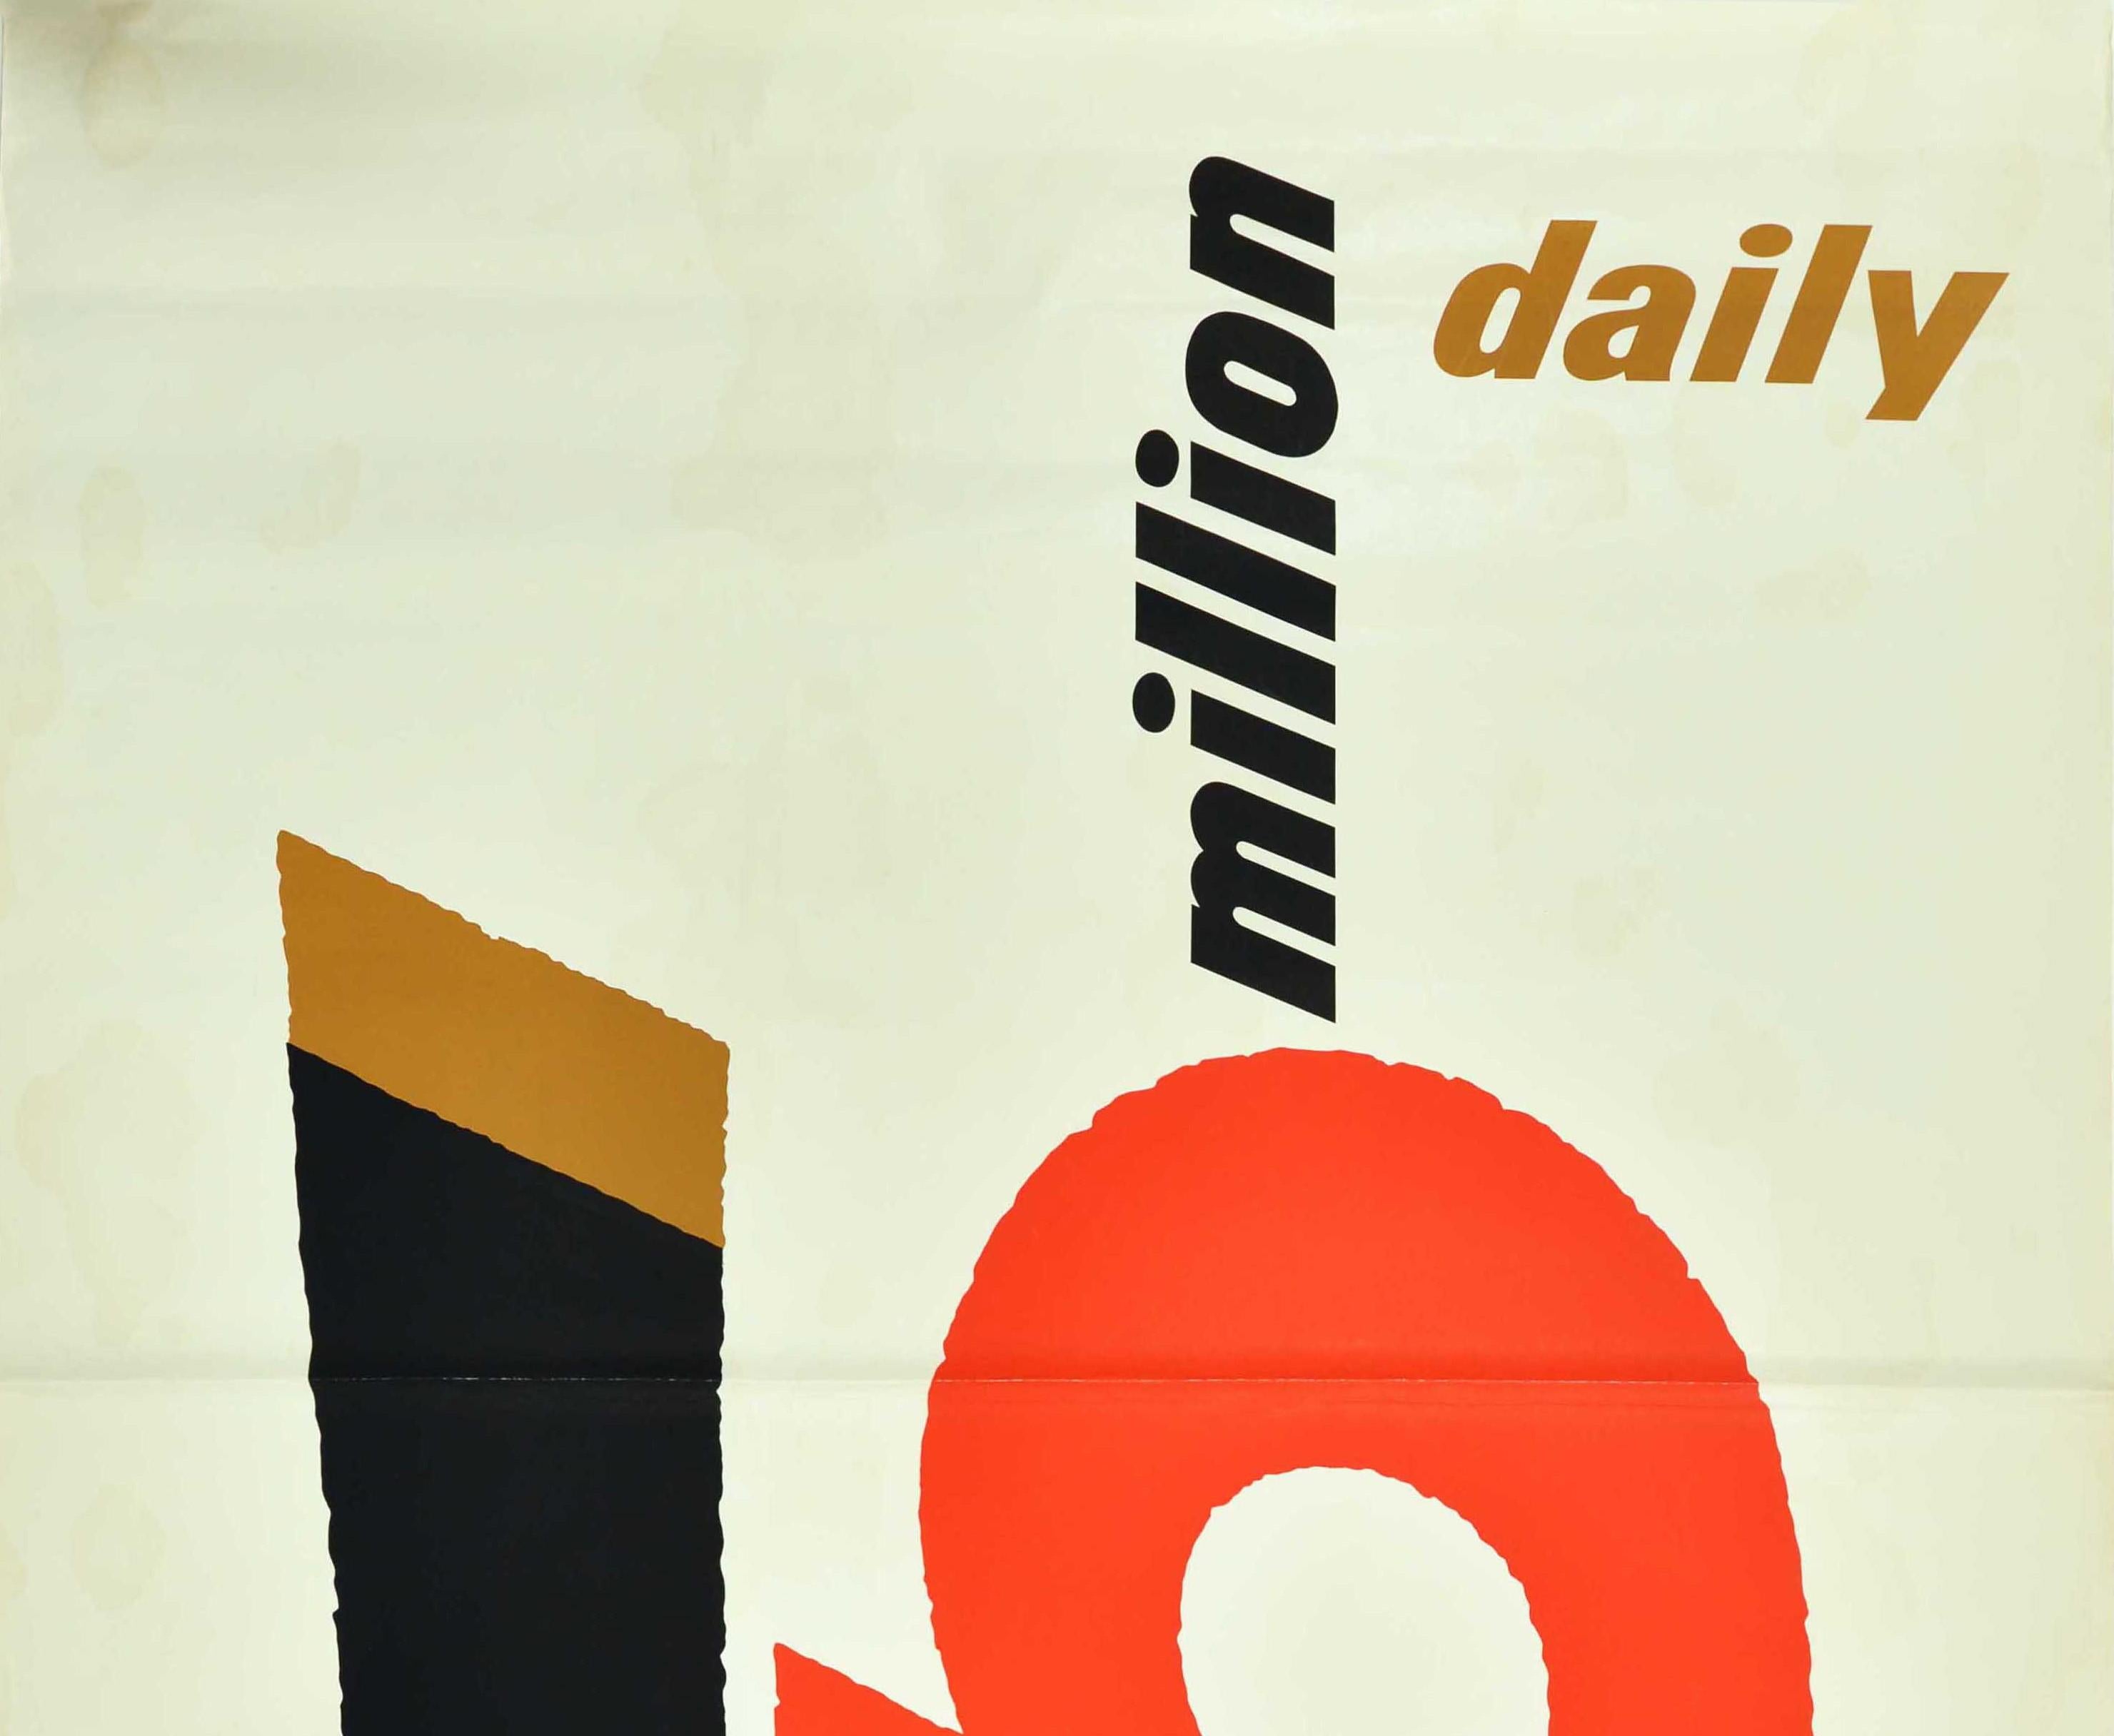 Grande affiche publicitaire vintage originale pour Guinness, réalisée par le célèbre graphiste britannique Abram Games (Abraham Gamse ; 1914-1996). Superbe dessin typographique présentant le texte Guinness 5 Million Daily avec le 5 et le G en gras